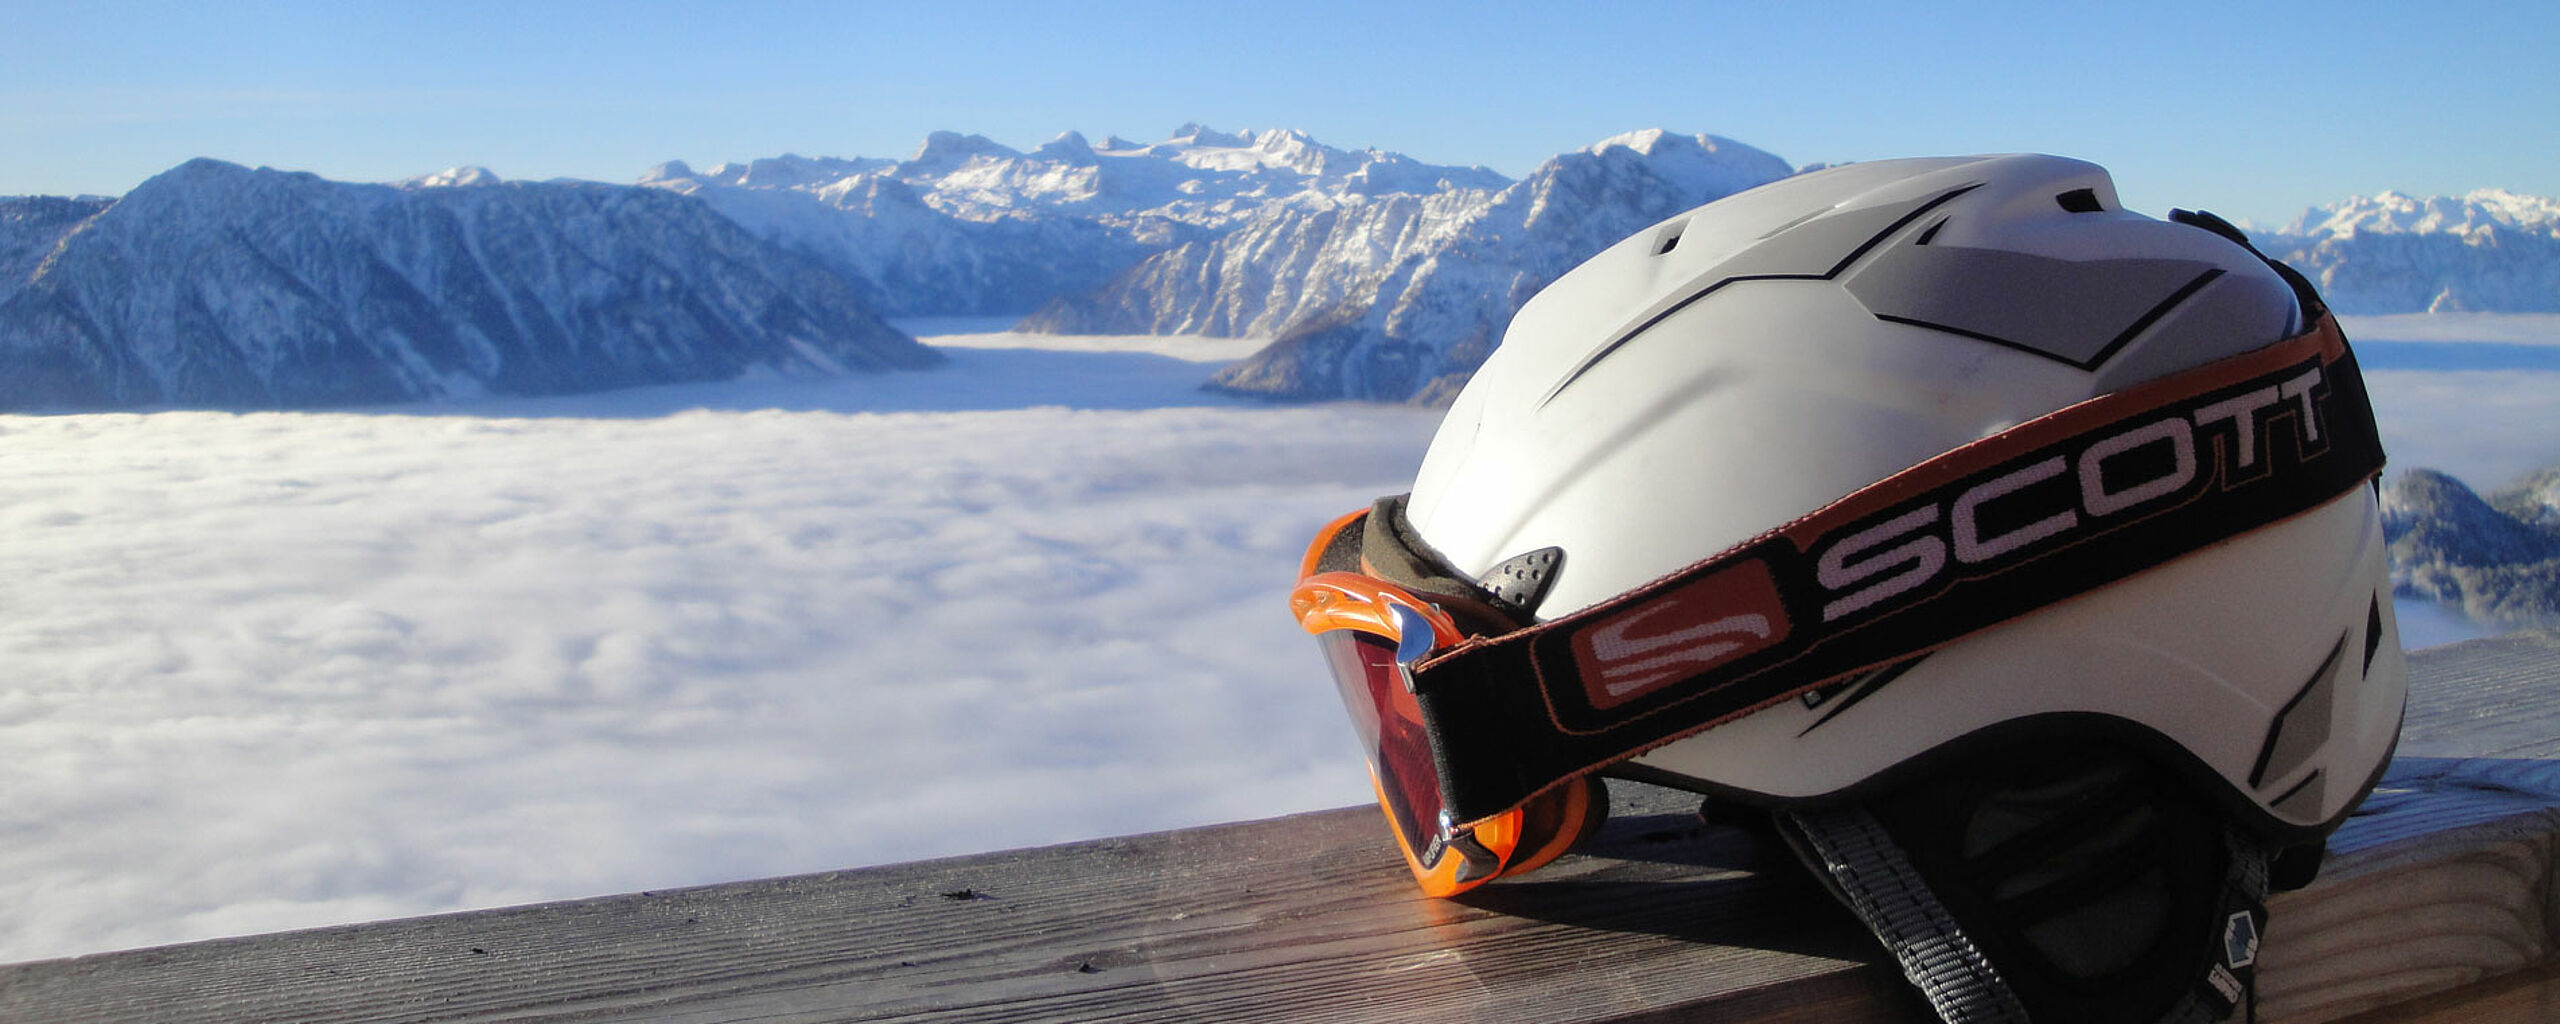 Skihelm mit Skibrille und Winterpanoramablick über Nebeldecke, c Egon Hierzegger